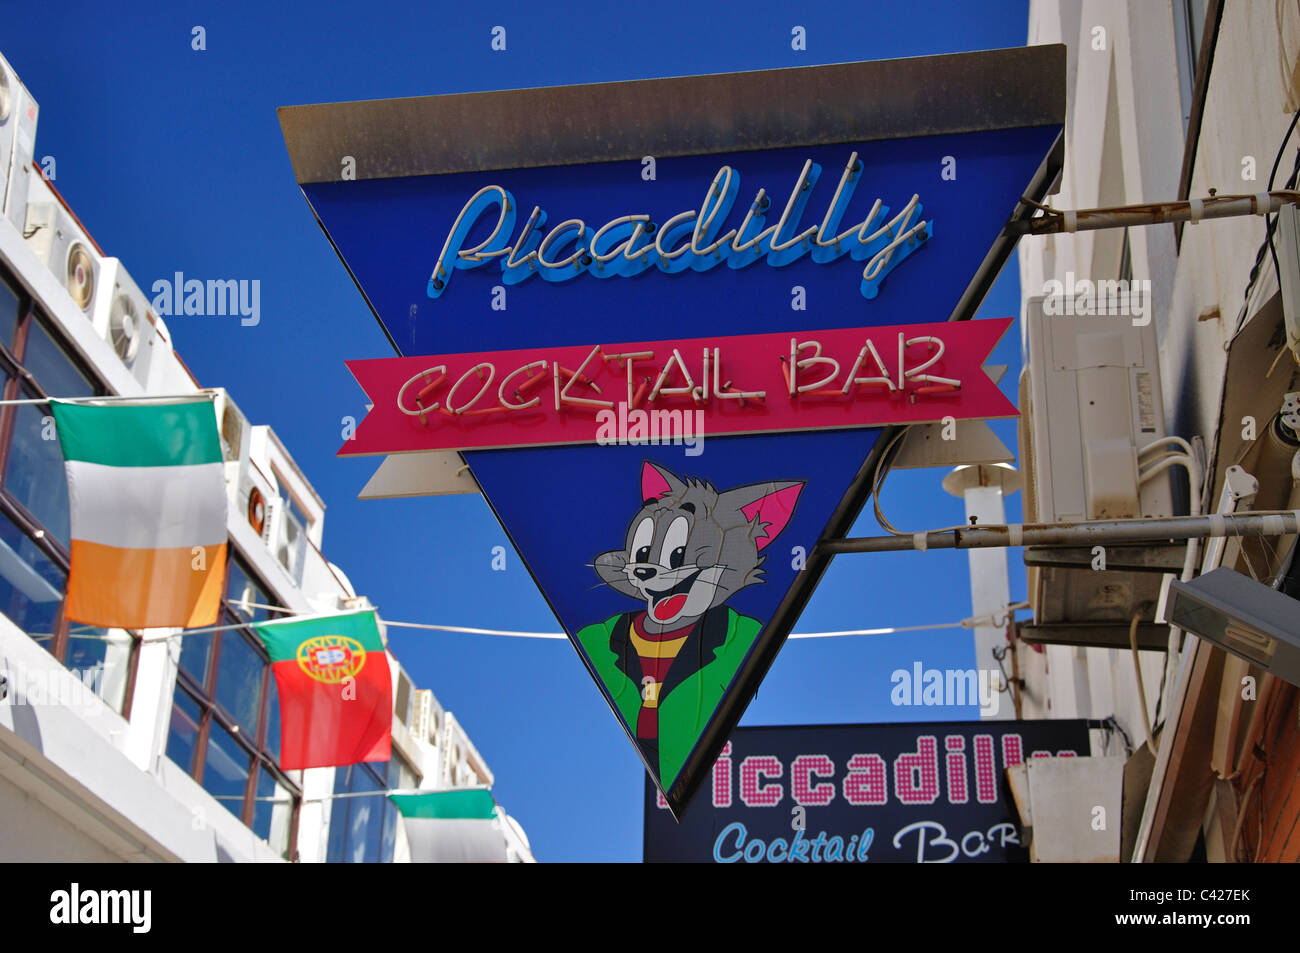 Piccadilly cocktail Bar Neon Sign, Candido des Reis, Albufeira, région de l'Algarve, Portugal Banque D'Images